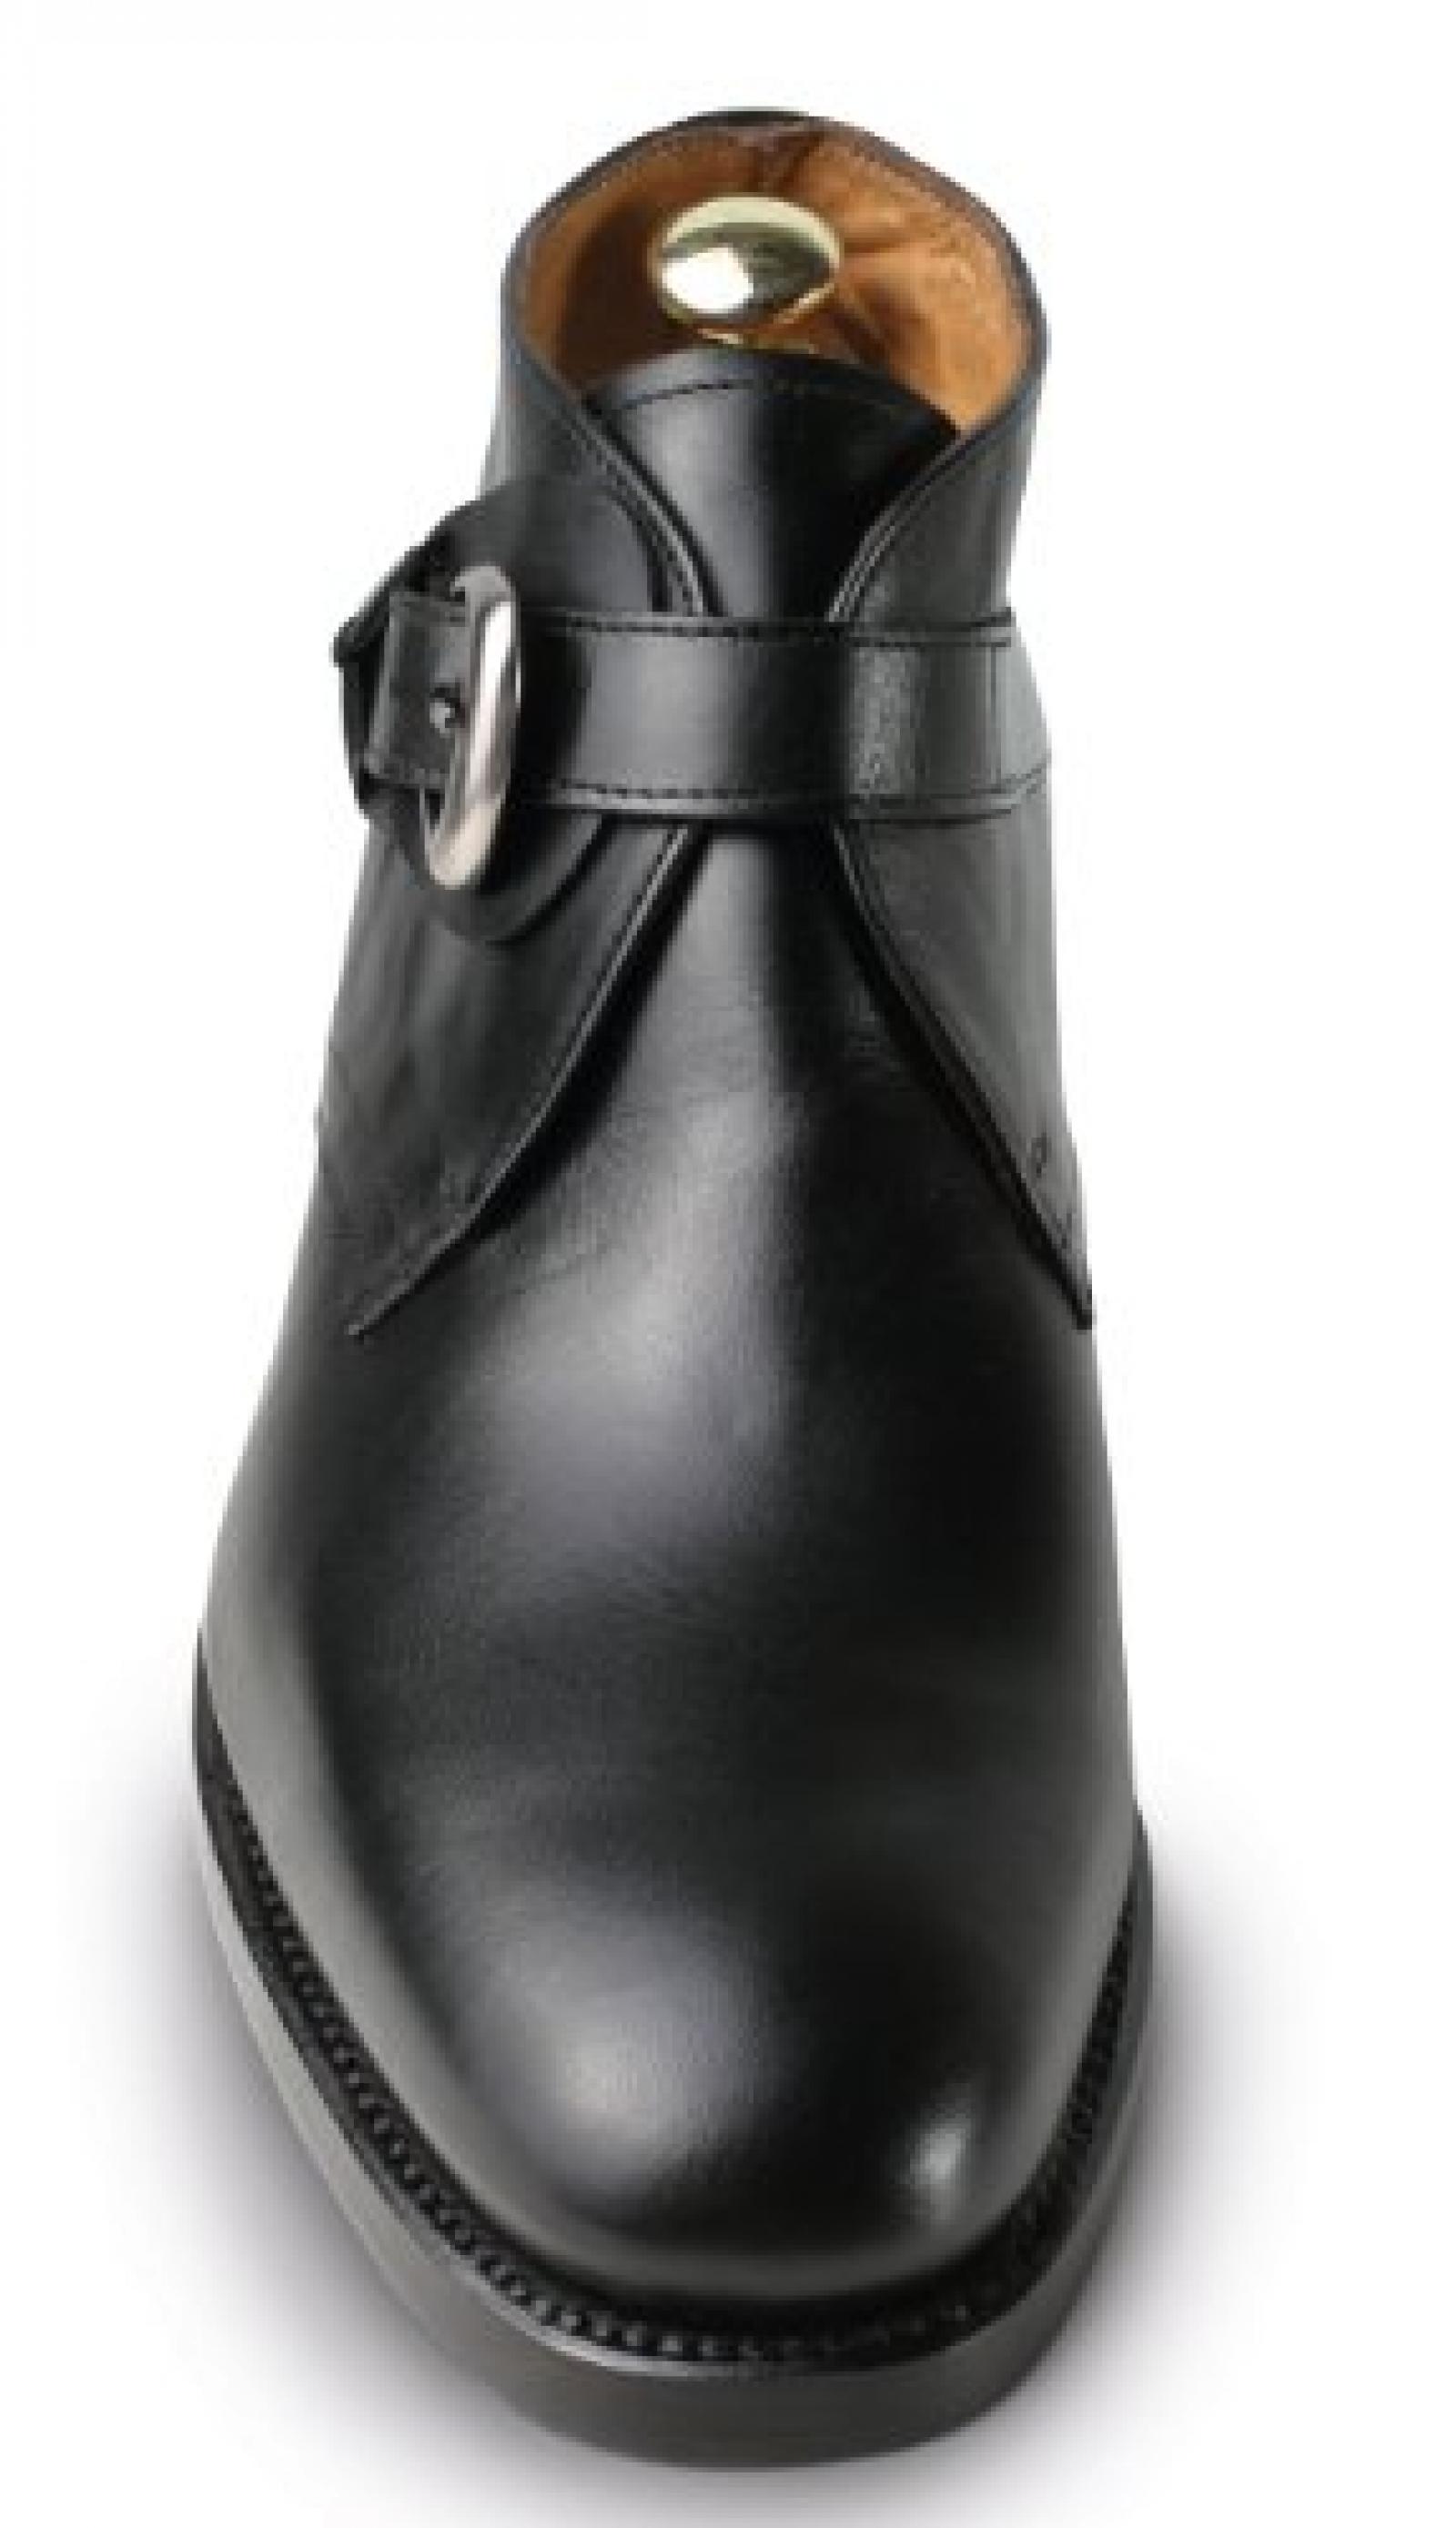 Masaltos - Schuhe für Männer erhöhen auf unsichtbare Weise Ihre Körpergrösse bis zu 7 cm. Modell Dover 